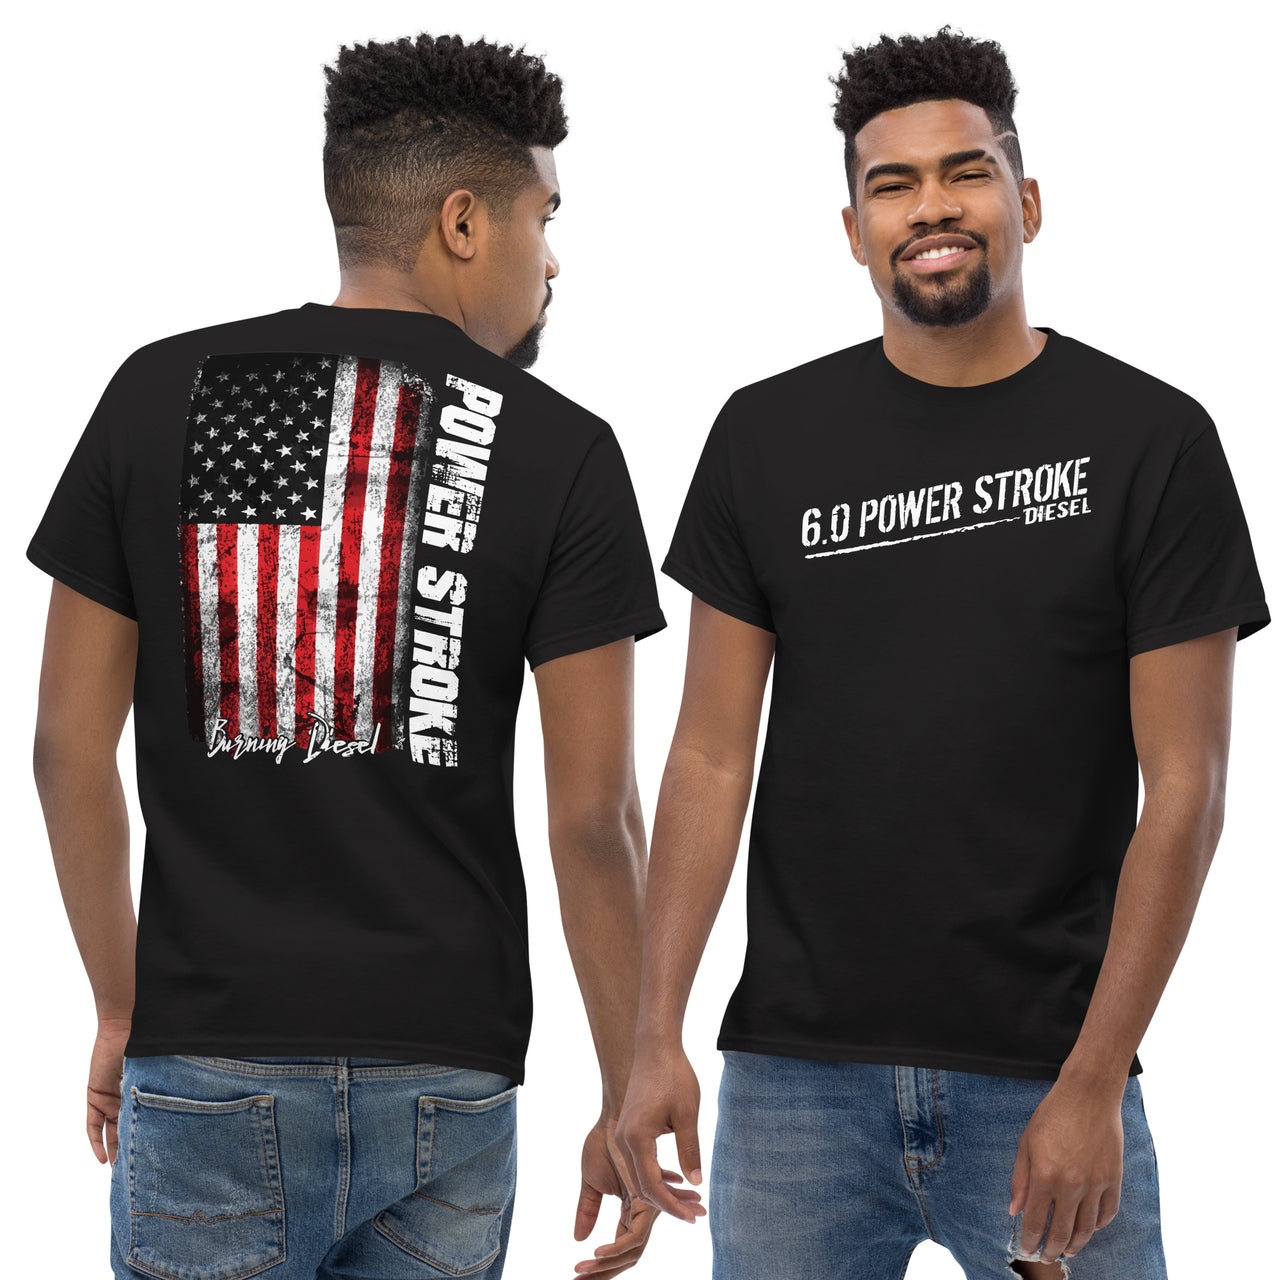 6.0 Powerstroke American Flag T-Shirt modeled in black